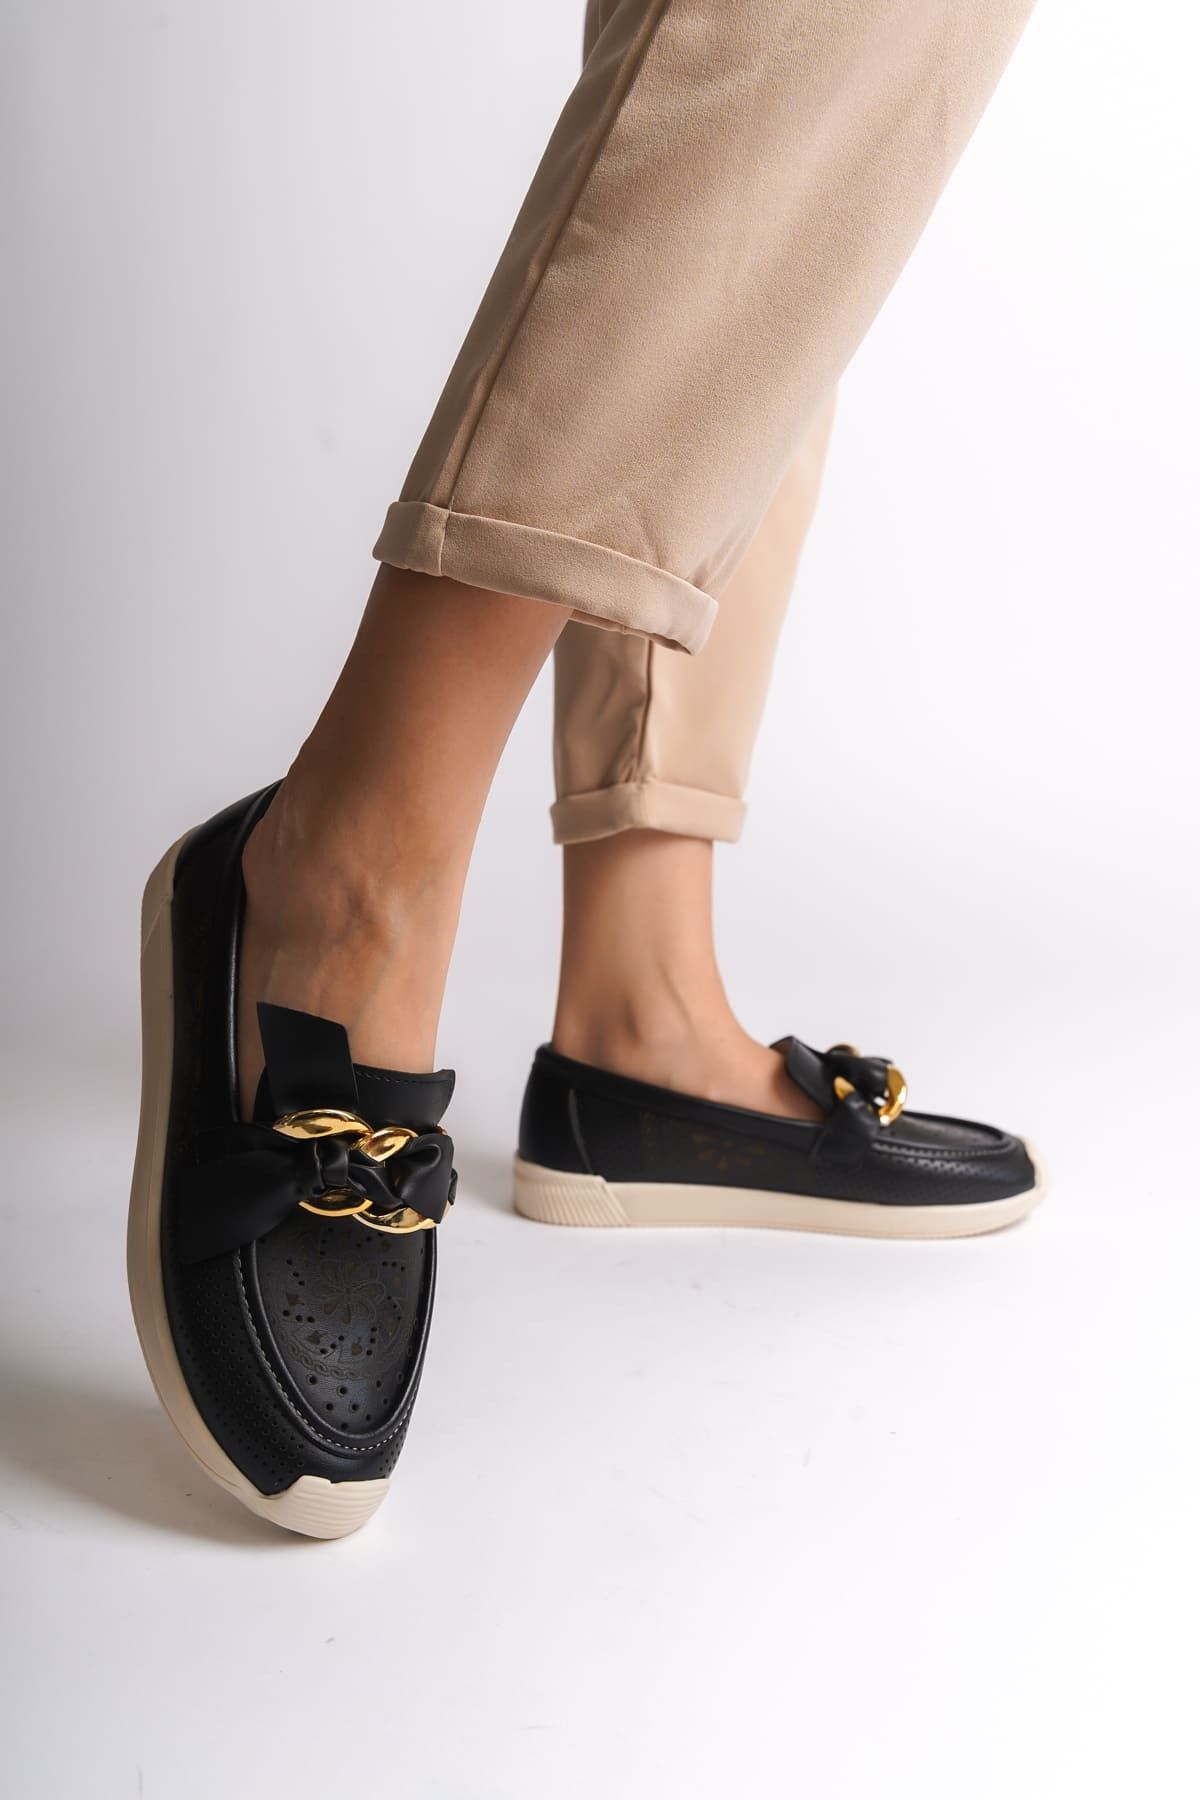 Rozero Shoes LARISSA Bağcıksız Ortopedik Rahat Taban Çiçek Desenli Babet Ayakkabı KT Siyah